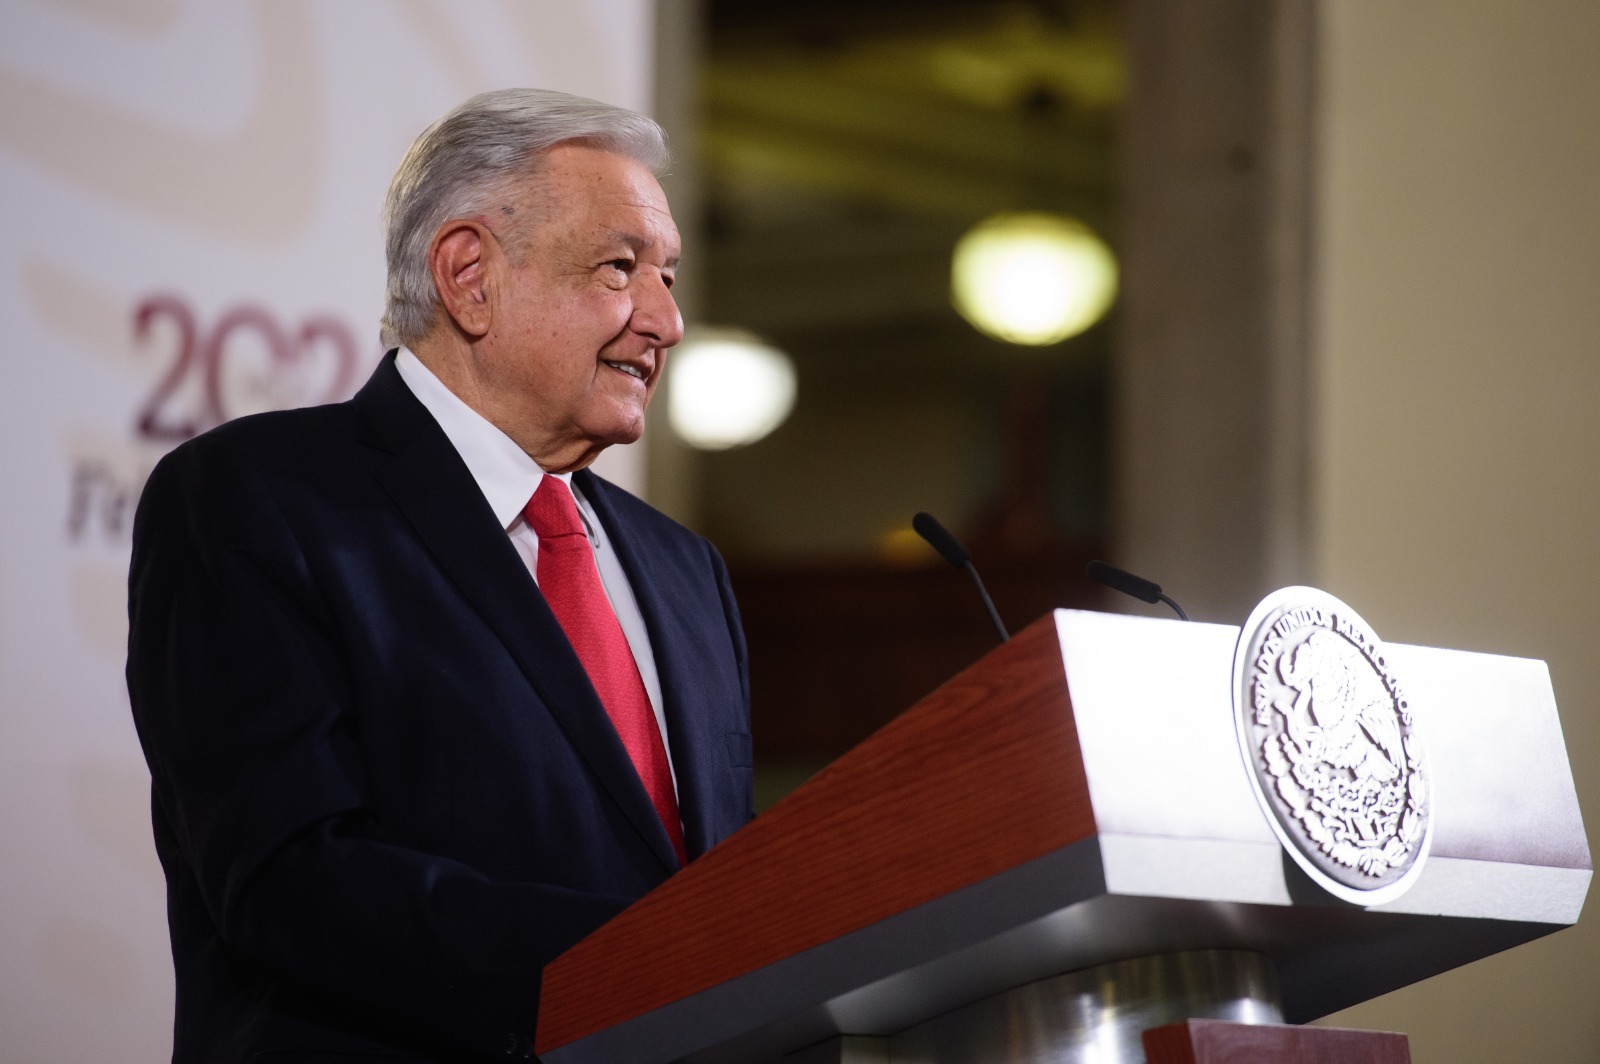 El presidente Andrés Manuel López Obrador reconoció que en México se fabrica fentanilo, aunque señaló que esta droga también se desarrolla en otros países de la región